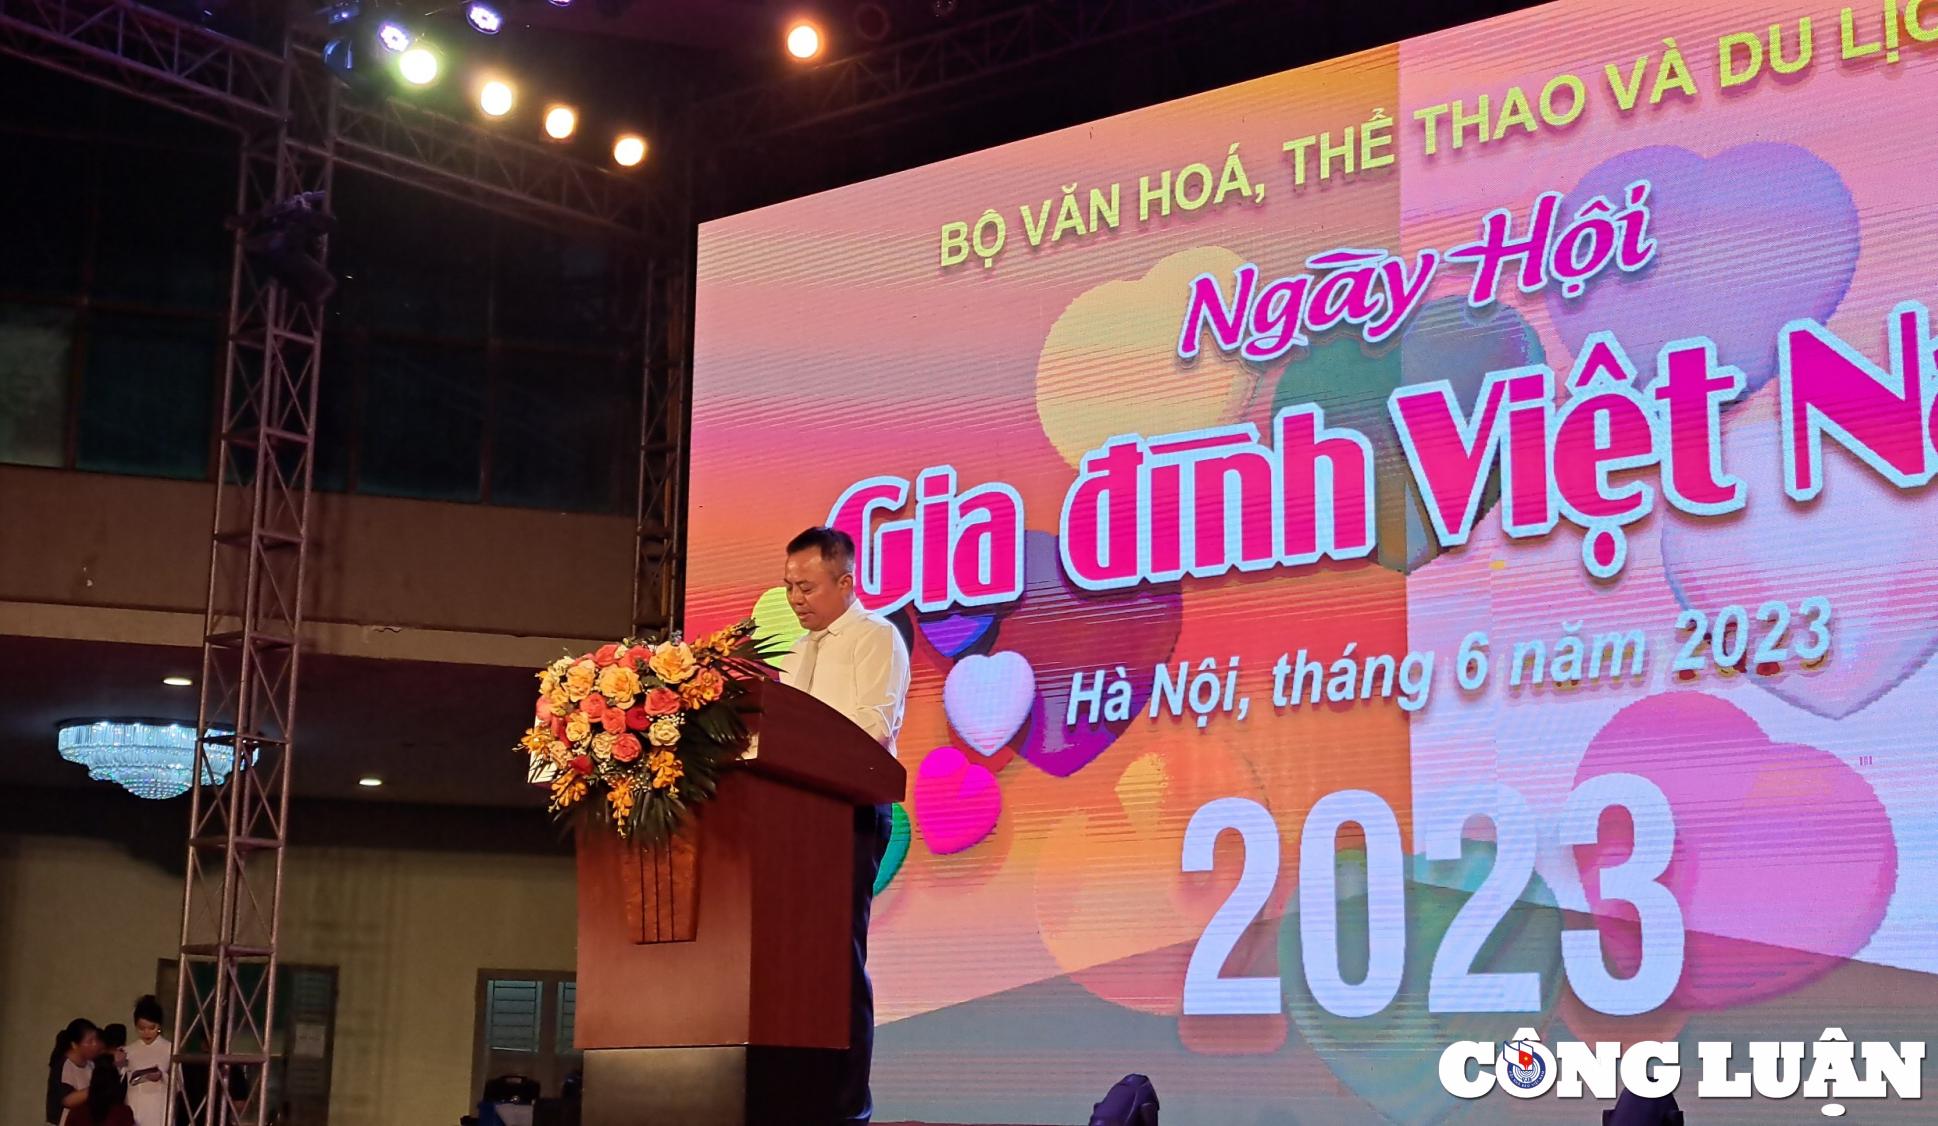 Ông Nguyễn Đăng Chương – Nhà viết kịch, Giám đốc Trung tâm Triển lãm văn hóa nghệ thuật Việt Nam phát biểu tại lễ khai mạc.